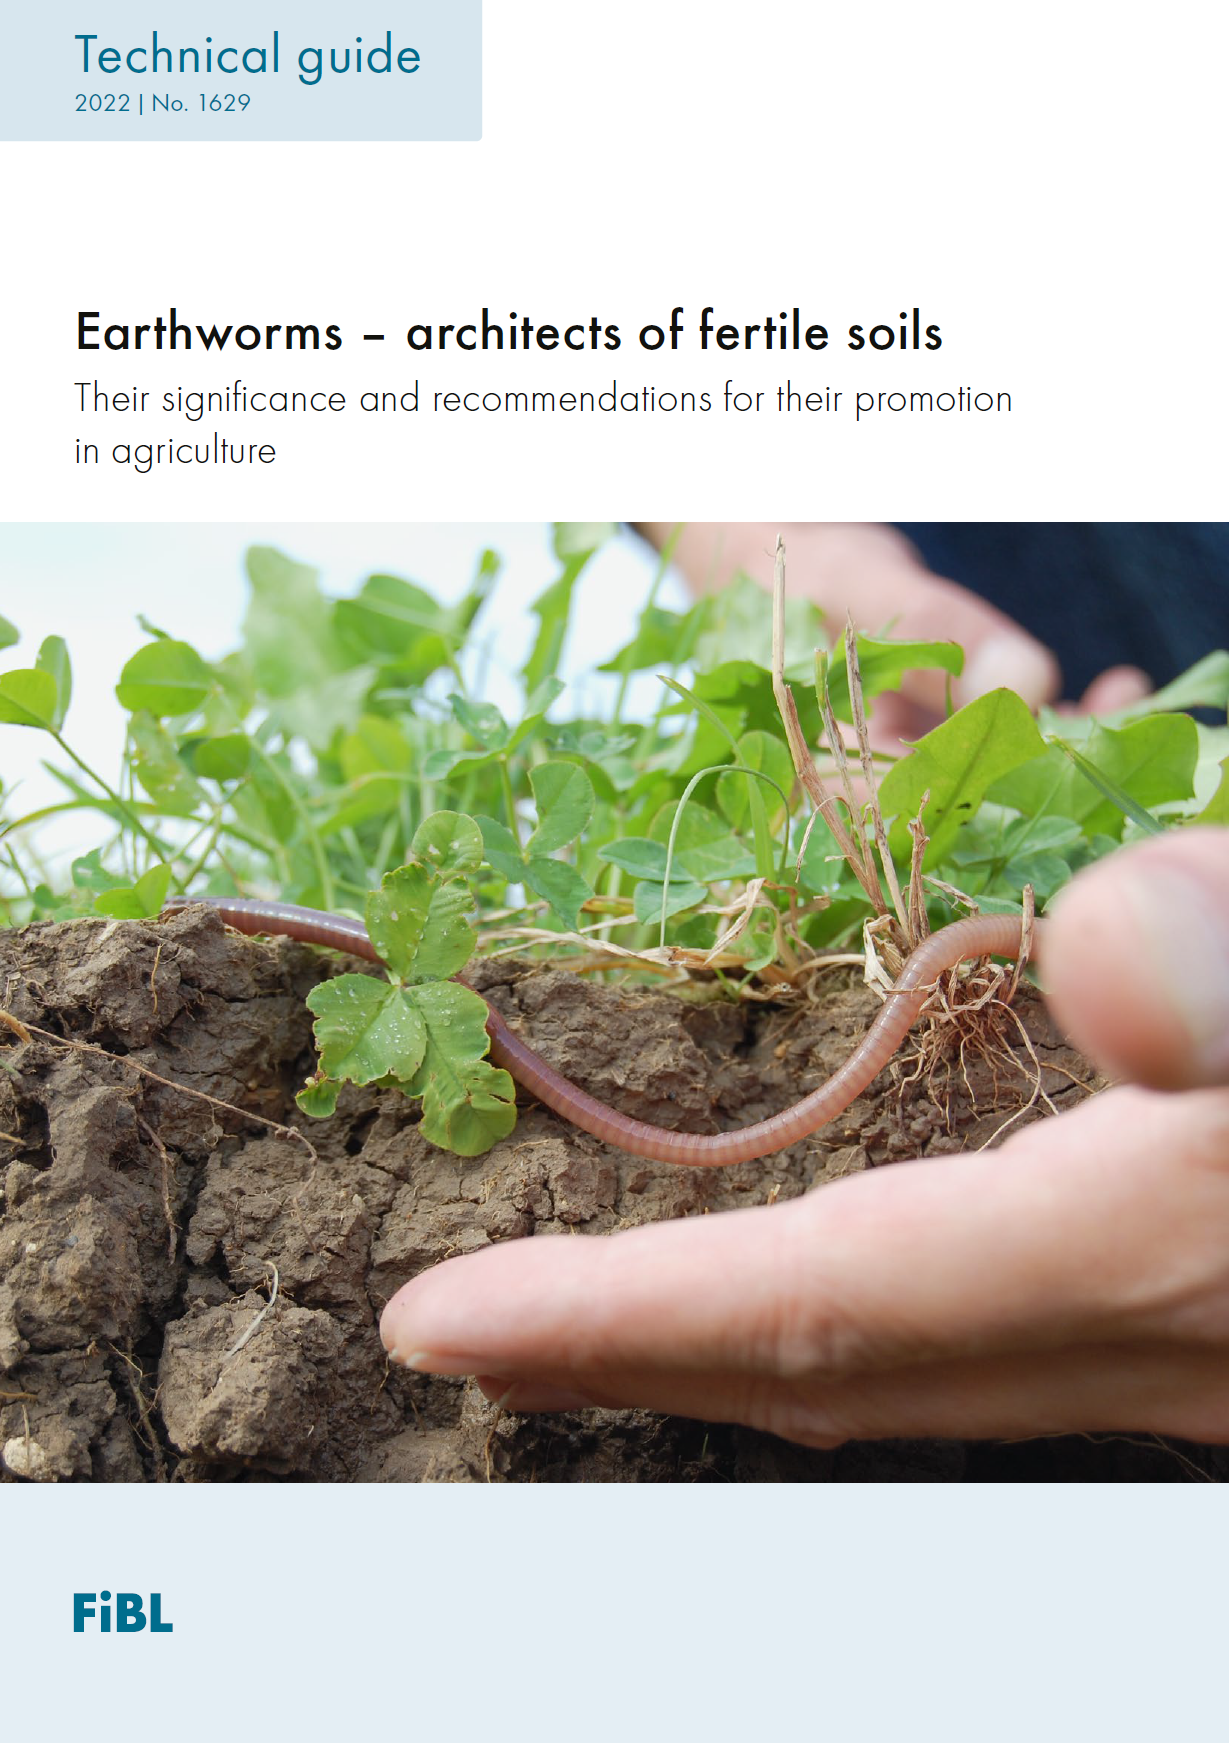 Les vers de terre : architectes des sols fertiles (Guide technique du FiBL)